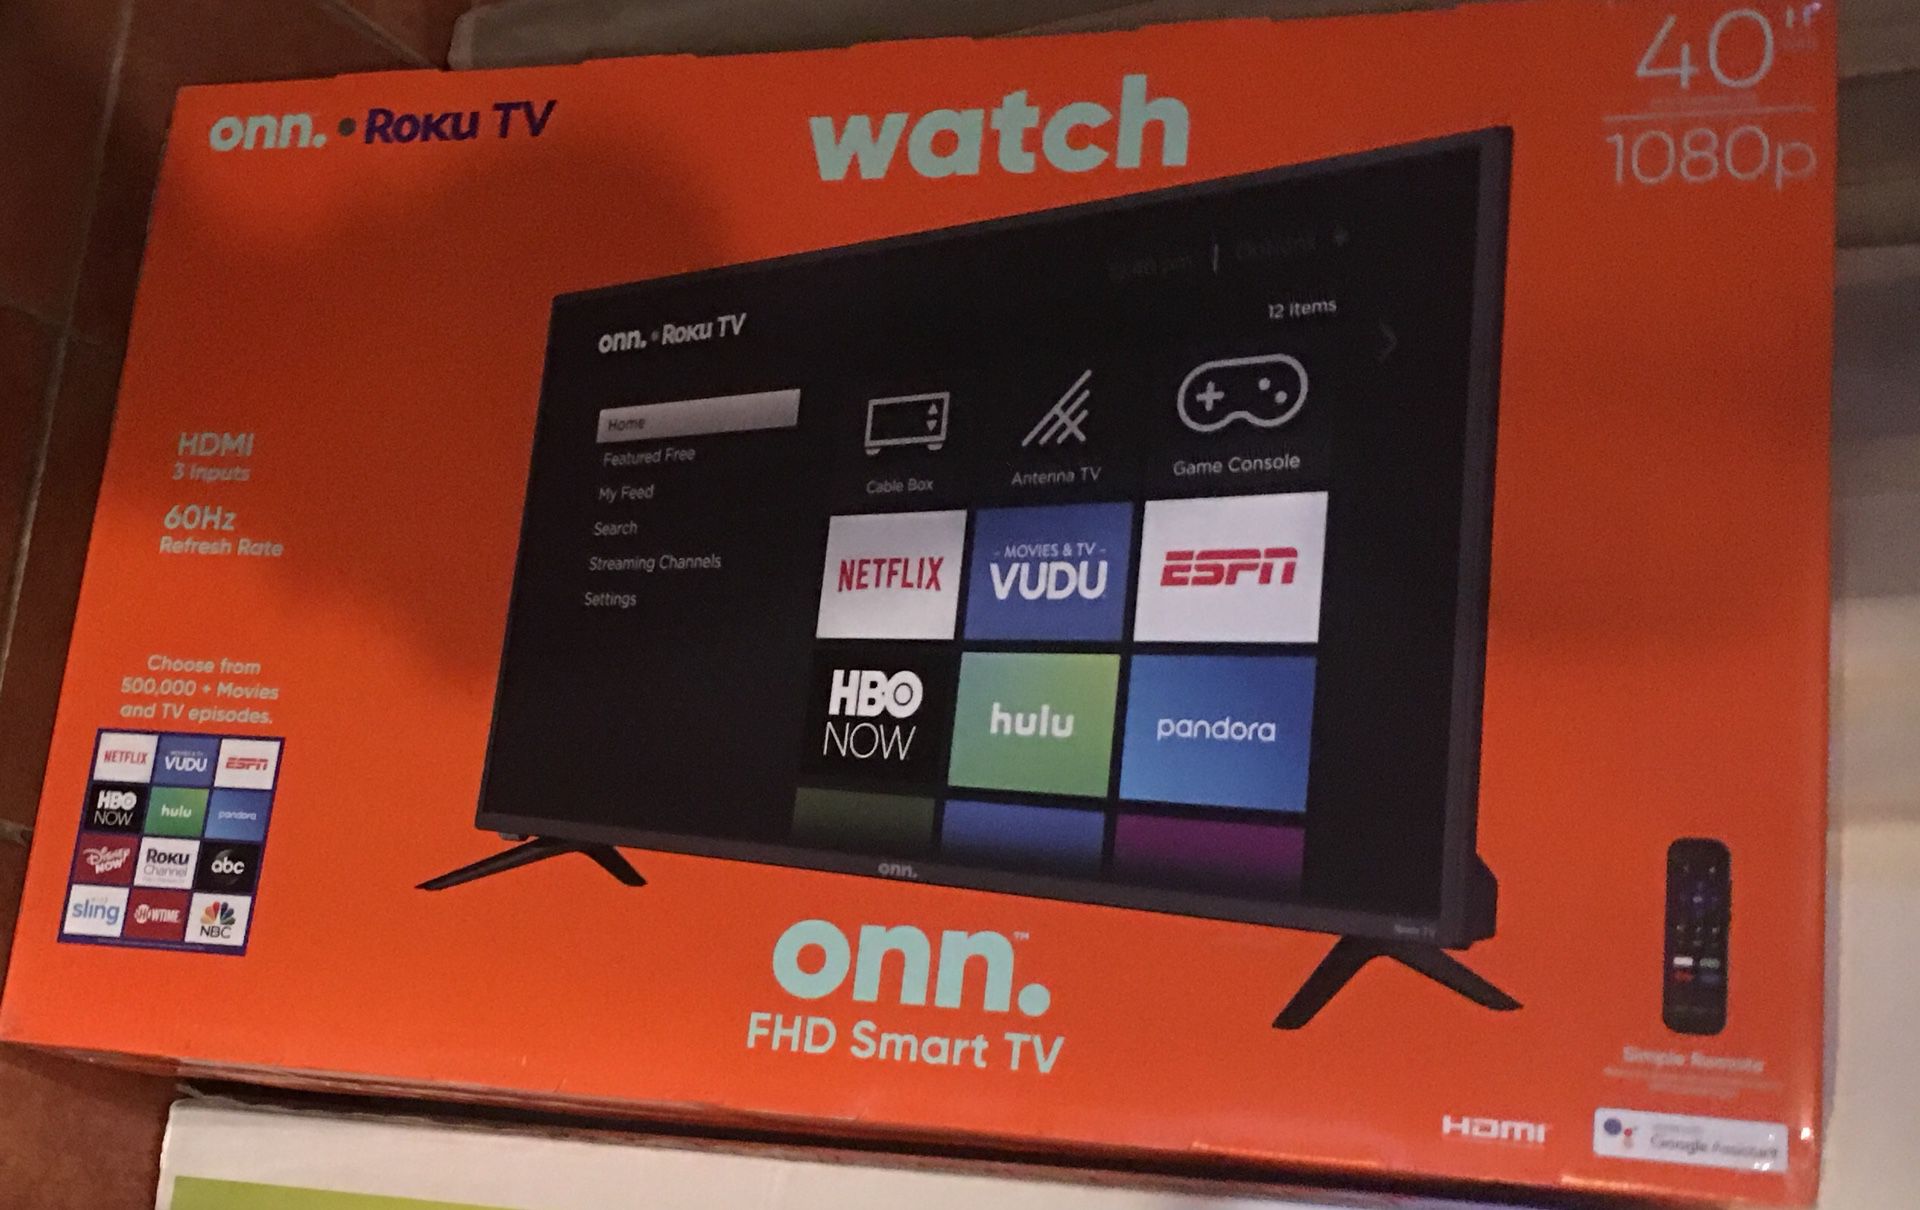 Onn 40 inch Smart TV